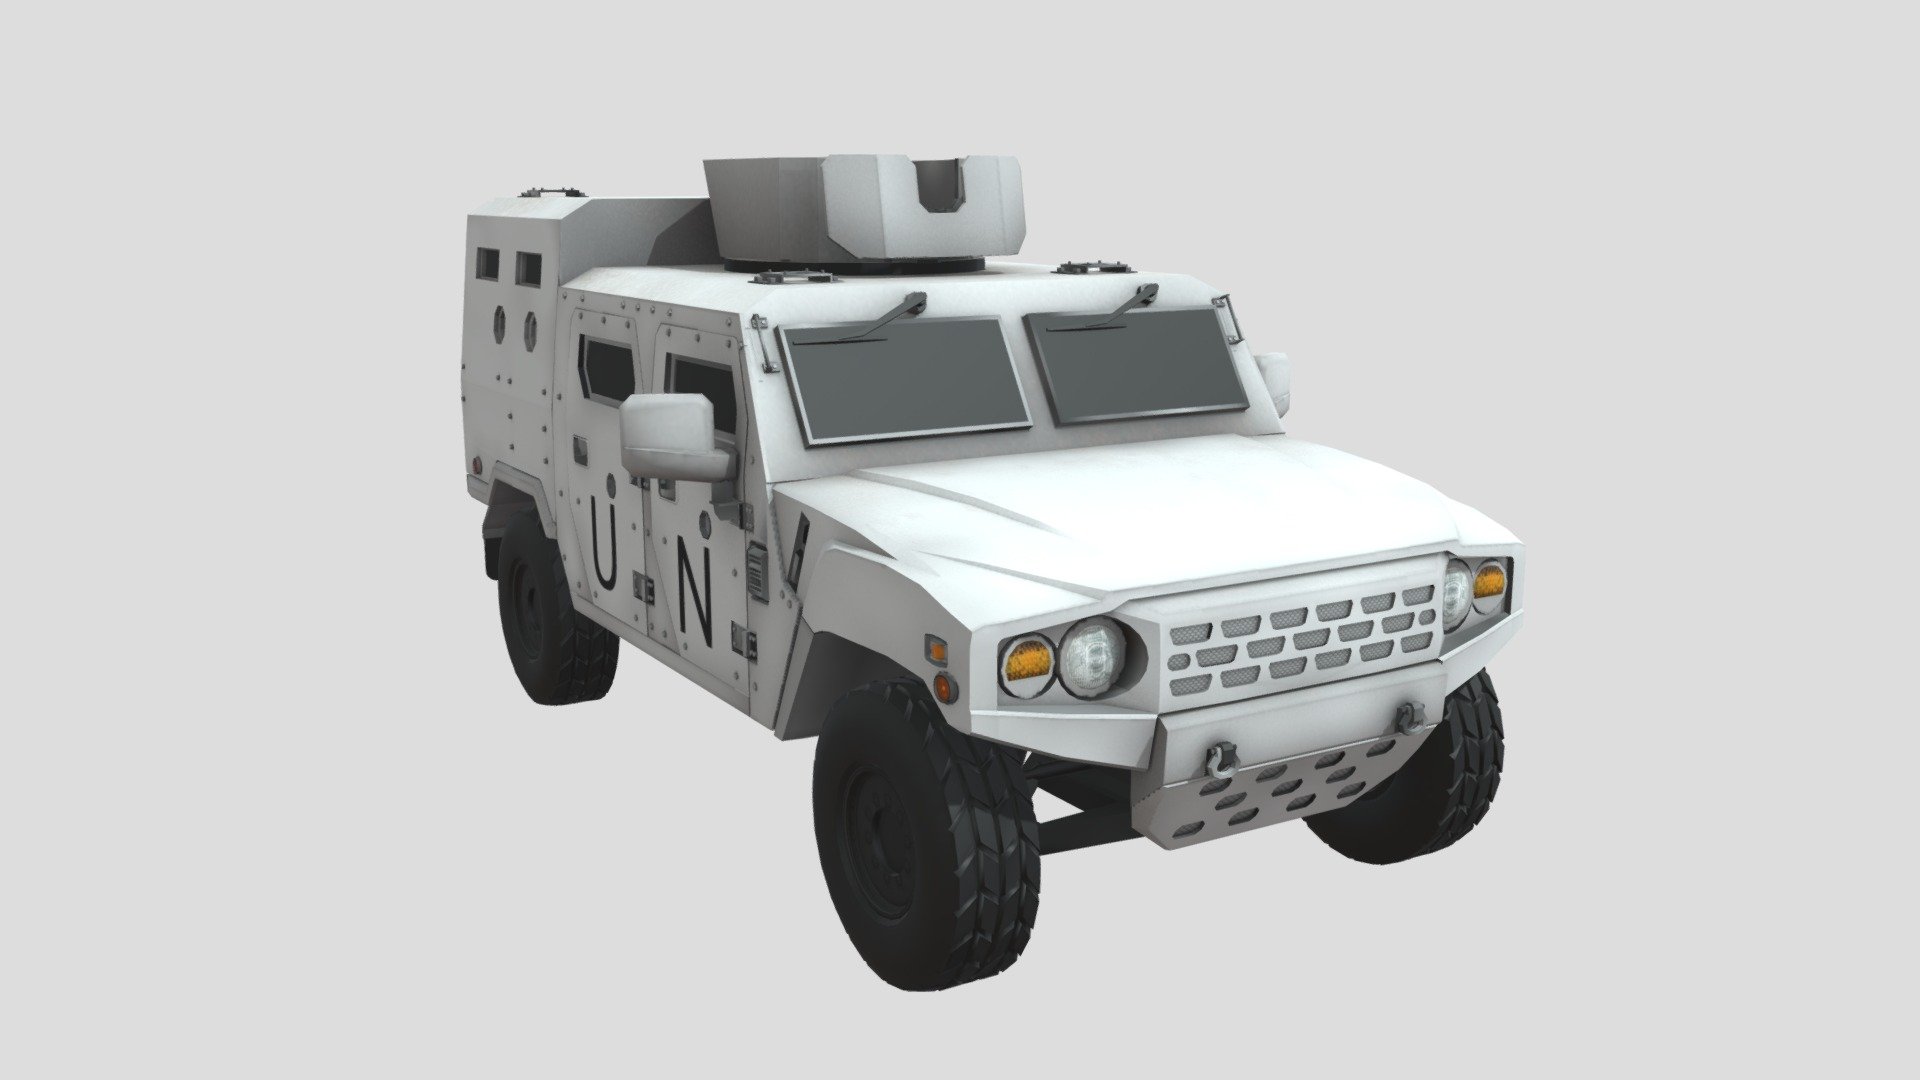 K-153 Armored Reconnaissance Vehicle - K-153 UN - 3D model by Uniform008 3d model